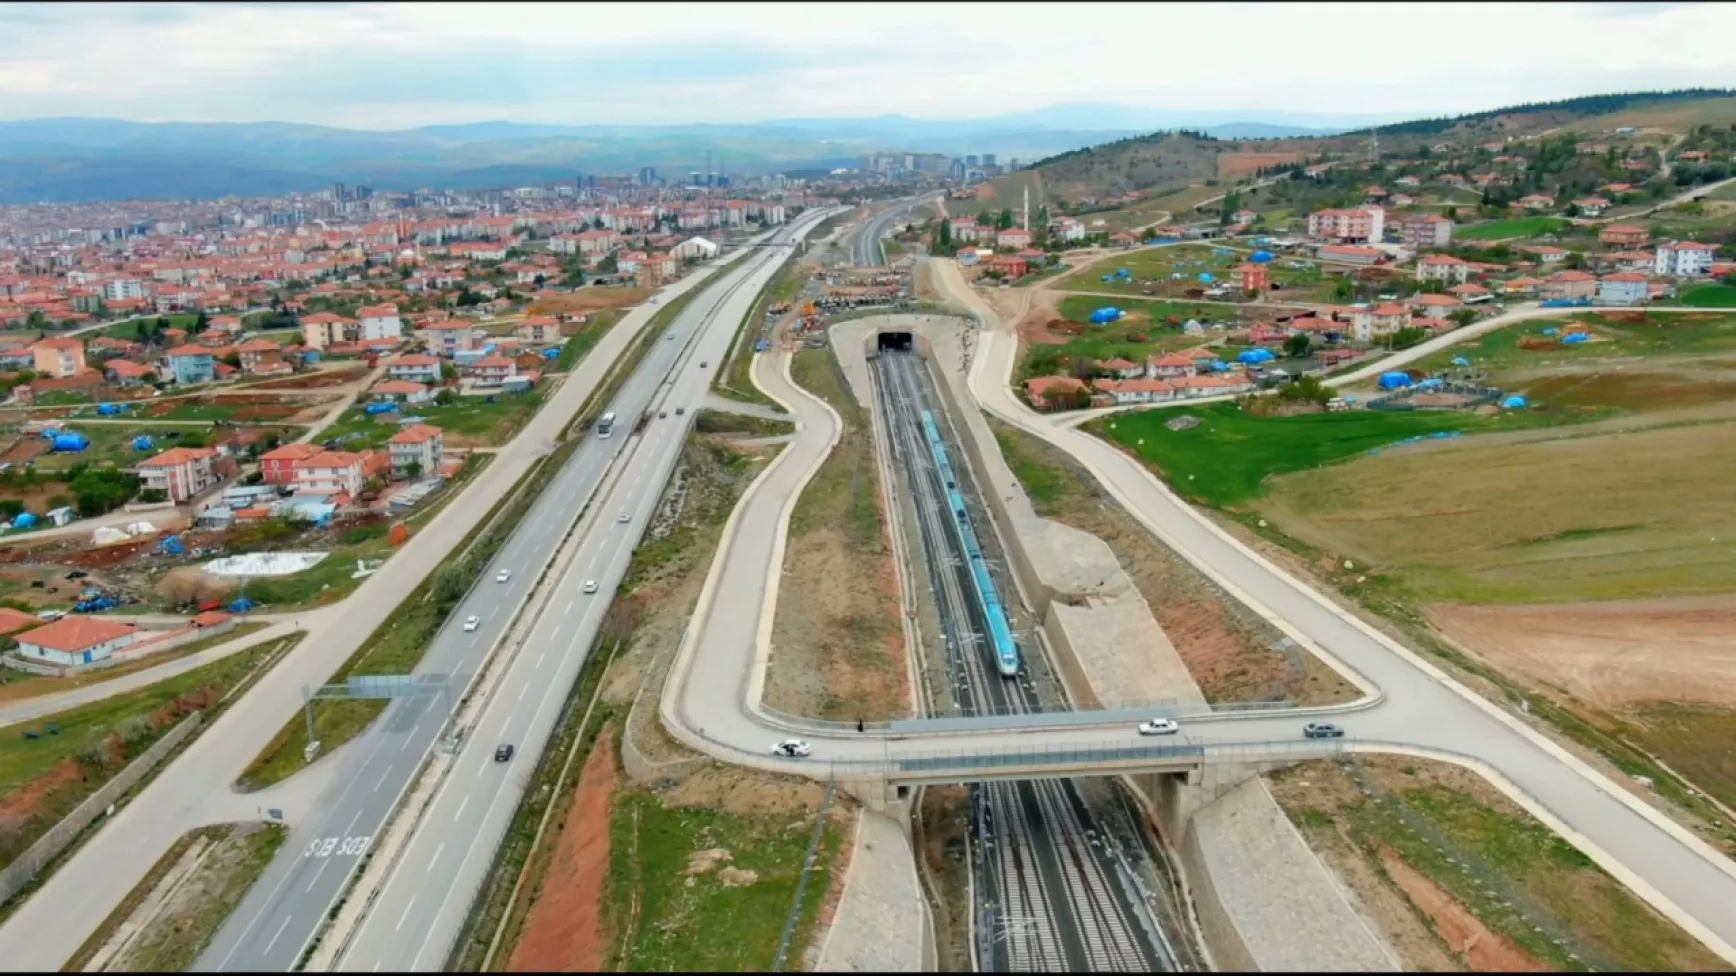 Sivas-İstanbul Yüksek Hızlı Tren Seferleri Başlıyor